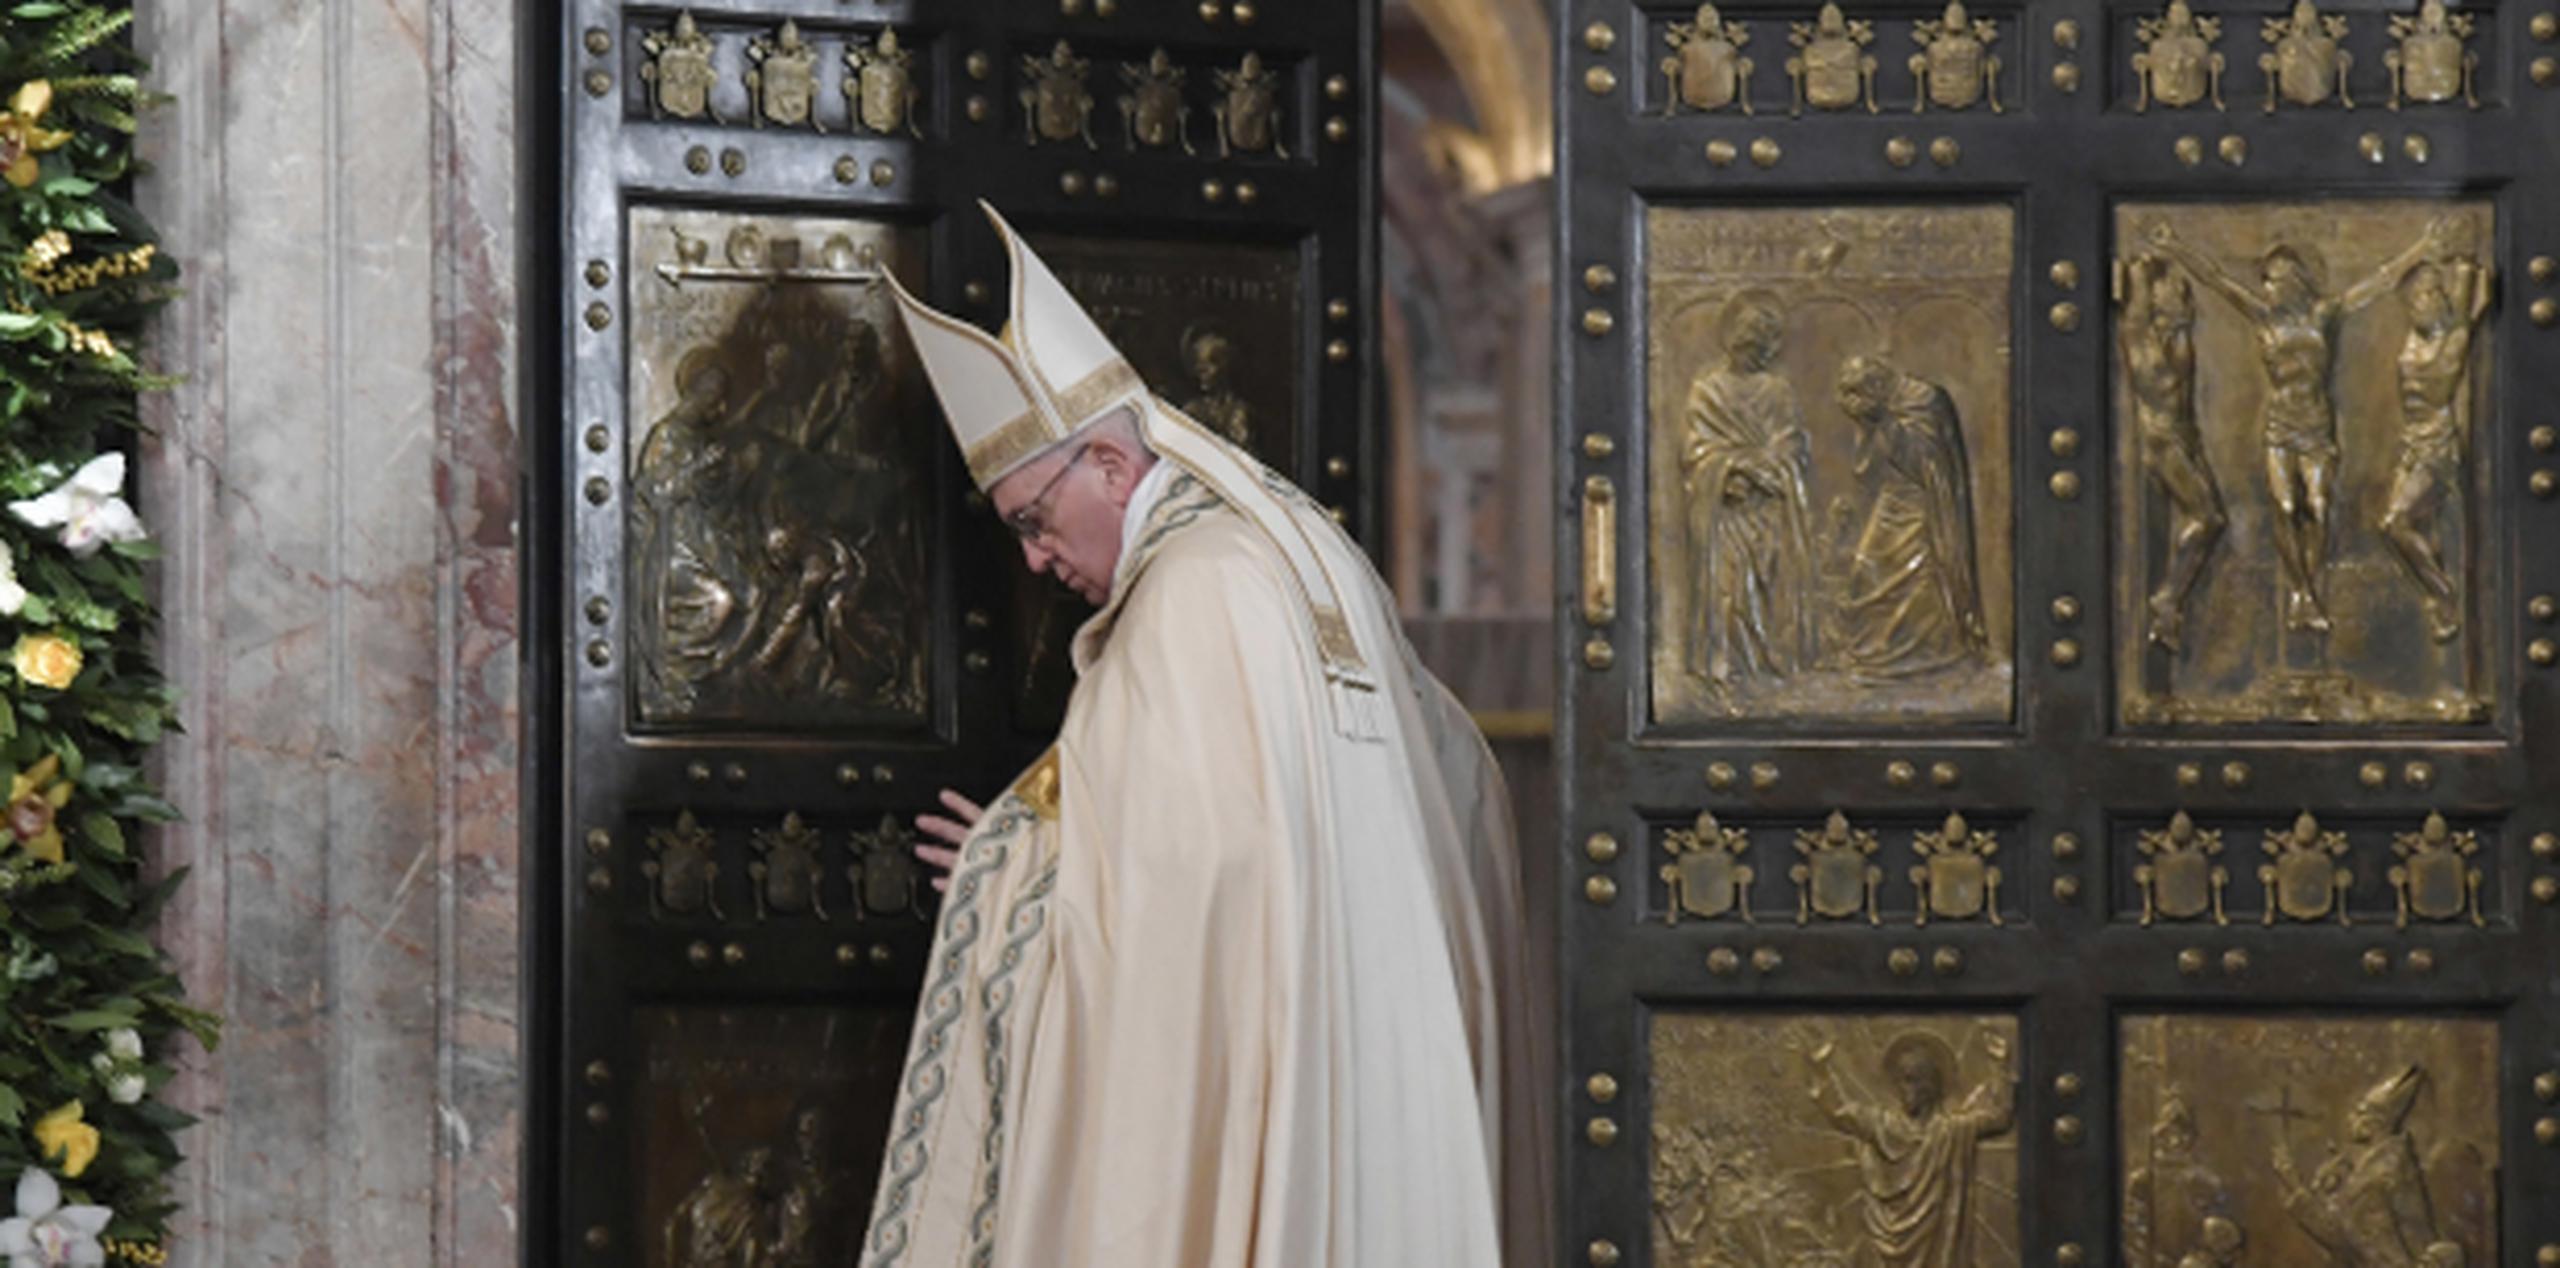 El papa Francisco cierra la Puerta Santa para concluir el Año Santo, que comenzó el 8 de diciembre de 2015, atrajo unos 20 millones de peregrinos a Roma. (AP)